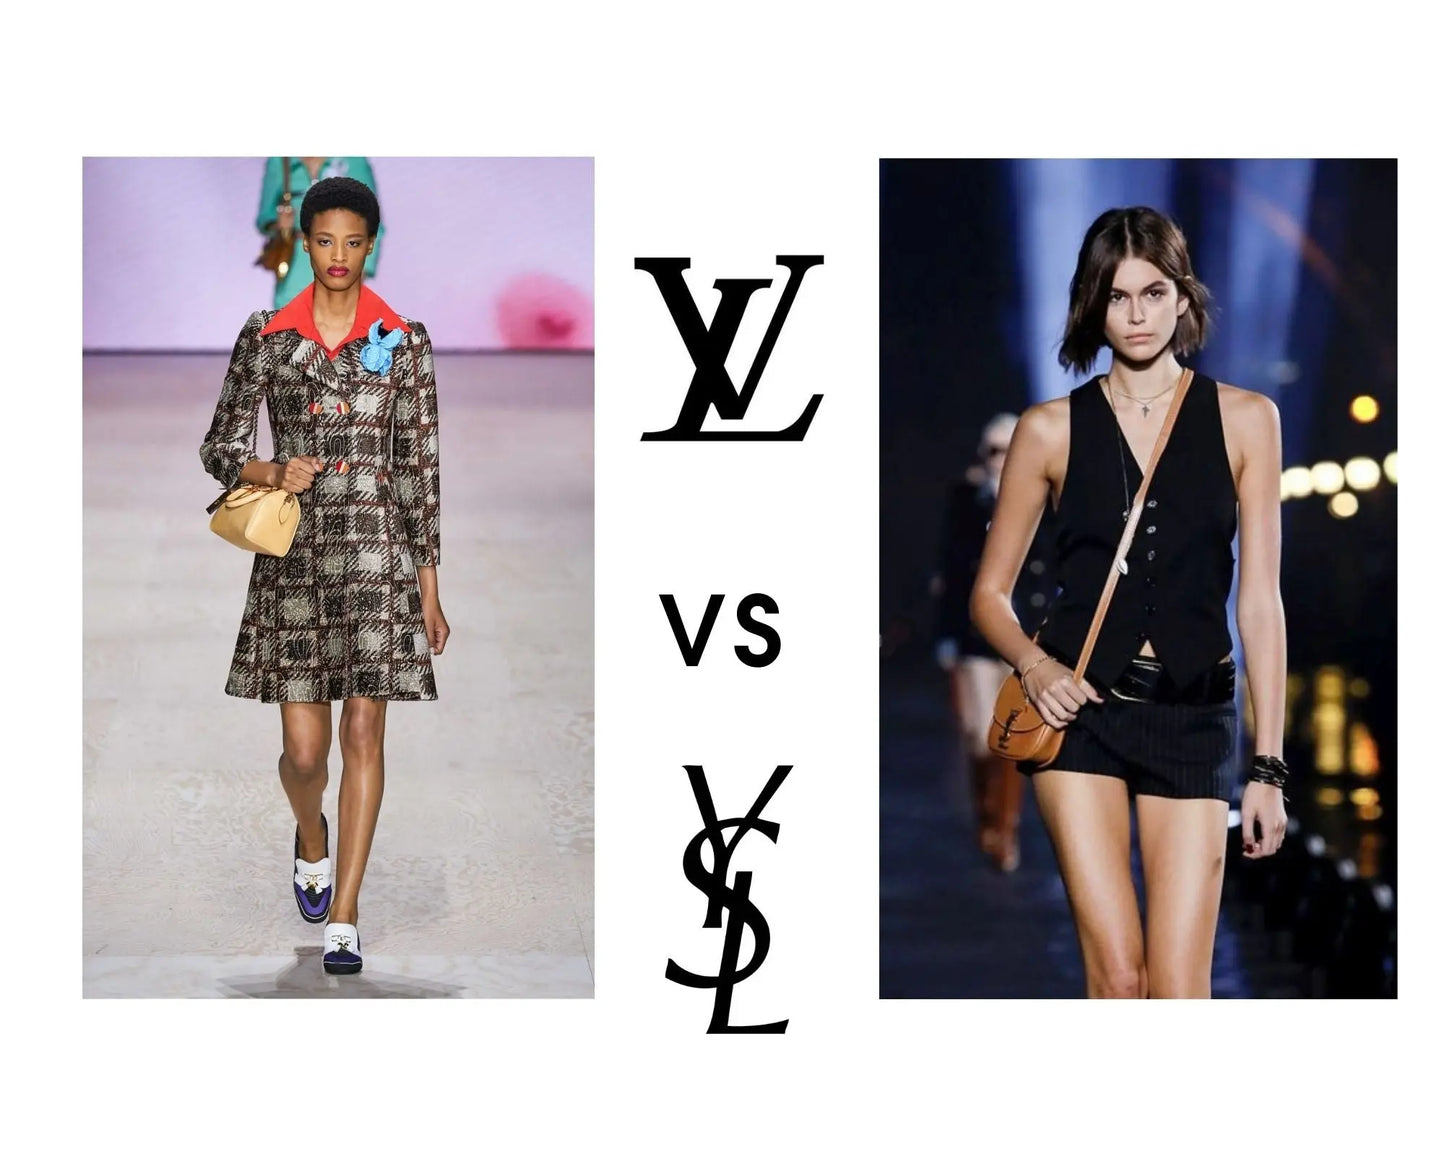 Cosas que saber antes de comprar un cinturón de Louis Vuitton para